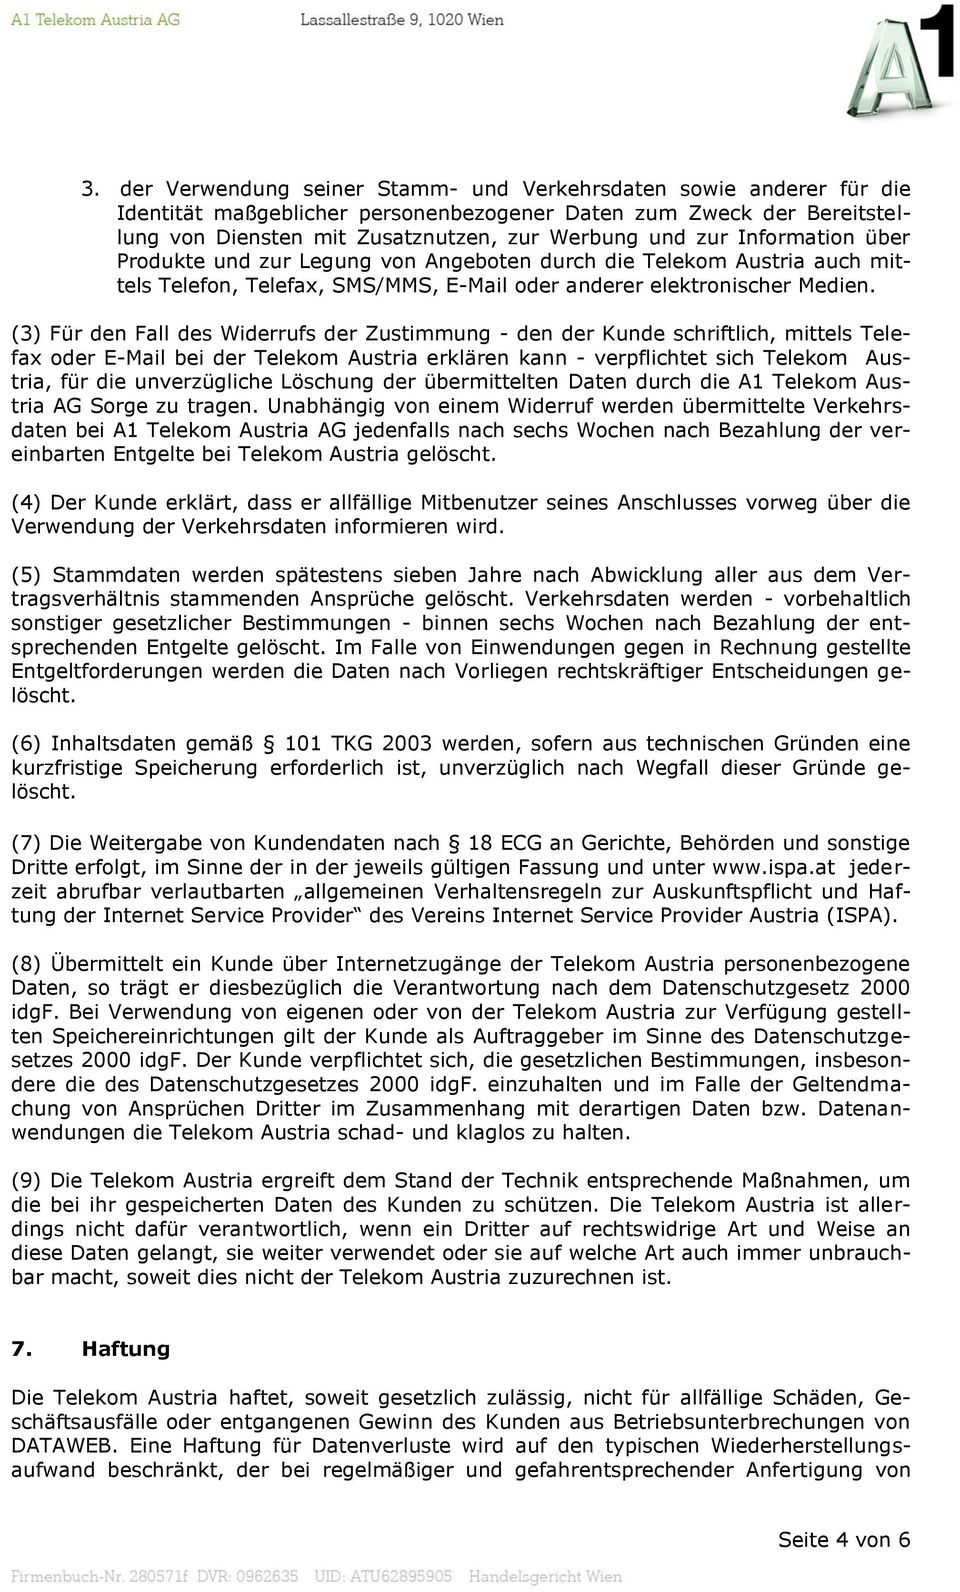 (3) Für den Fall des Widerrufs der Zustimmung - den der Kunde schriftlich, mittels Telefax oder E-Mail bei der Telekom Austria erklären kann - verpflichtet sich Telekom Austria, für die unverzügliche